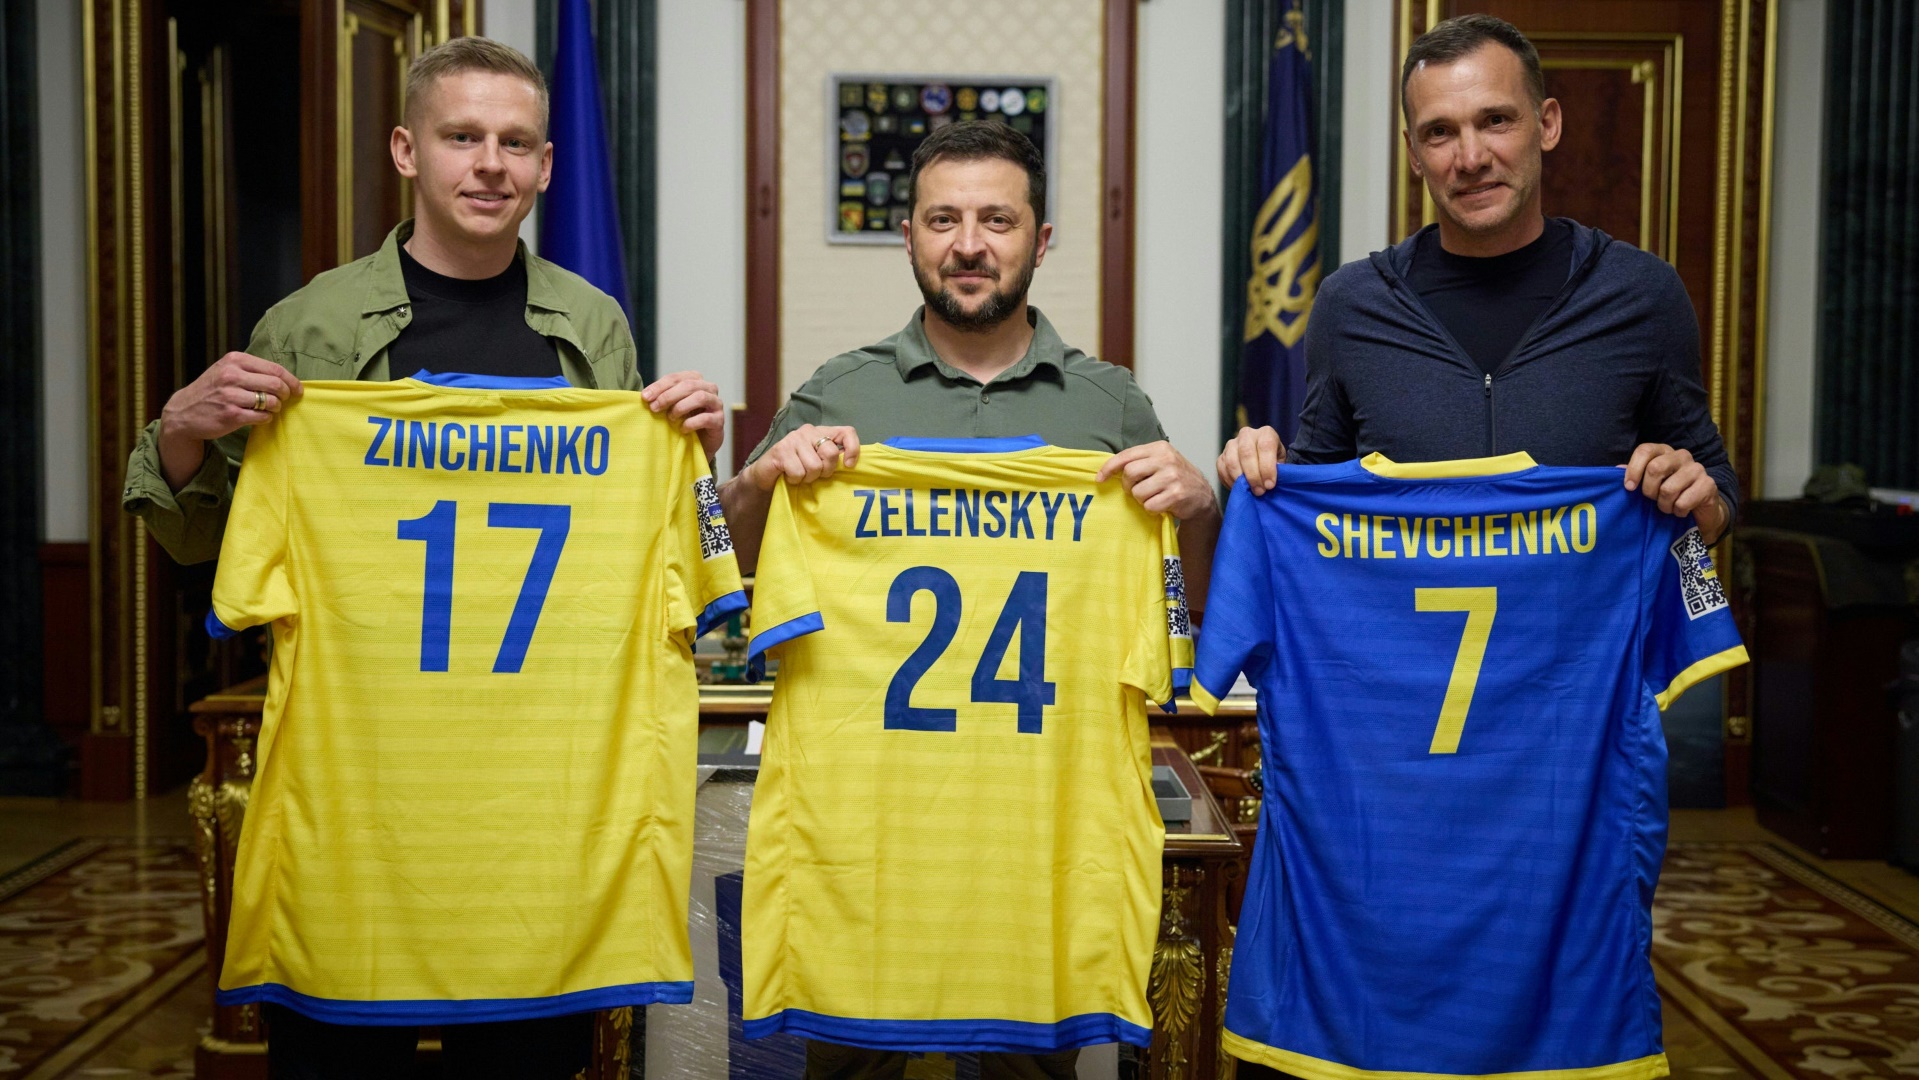 Auch im Ukraine-Krieg: Fußball mit politischer Dimension